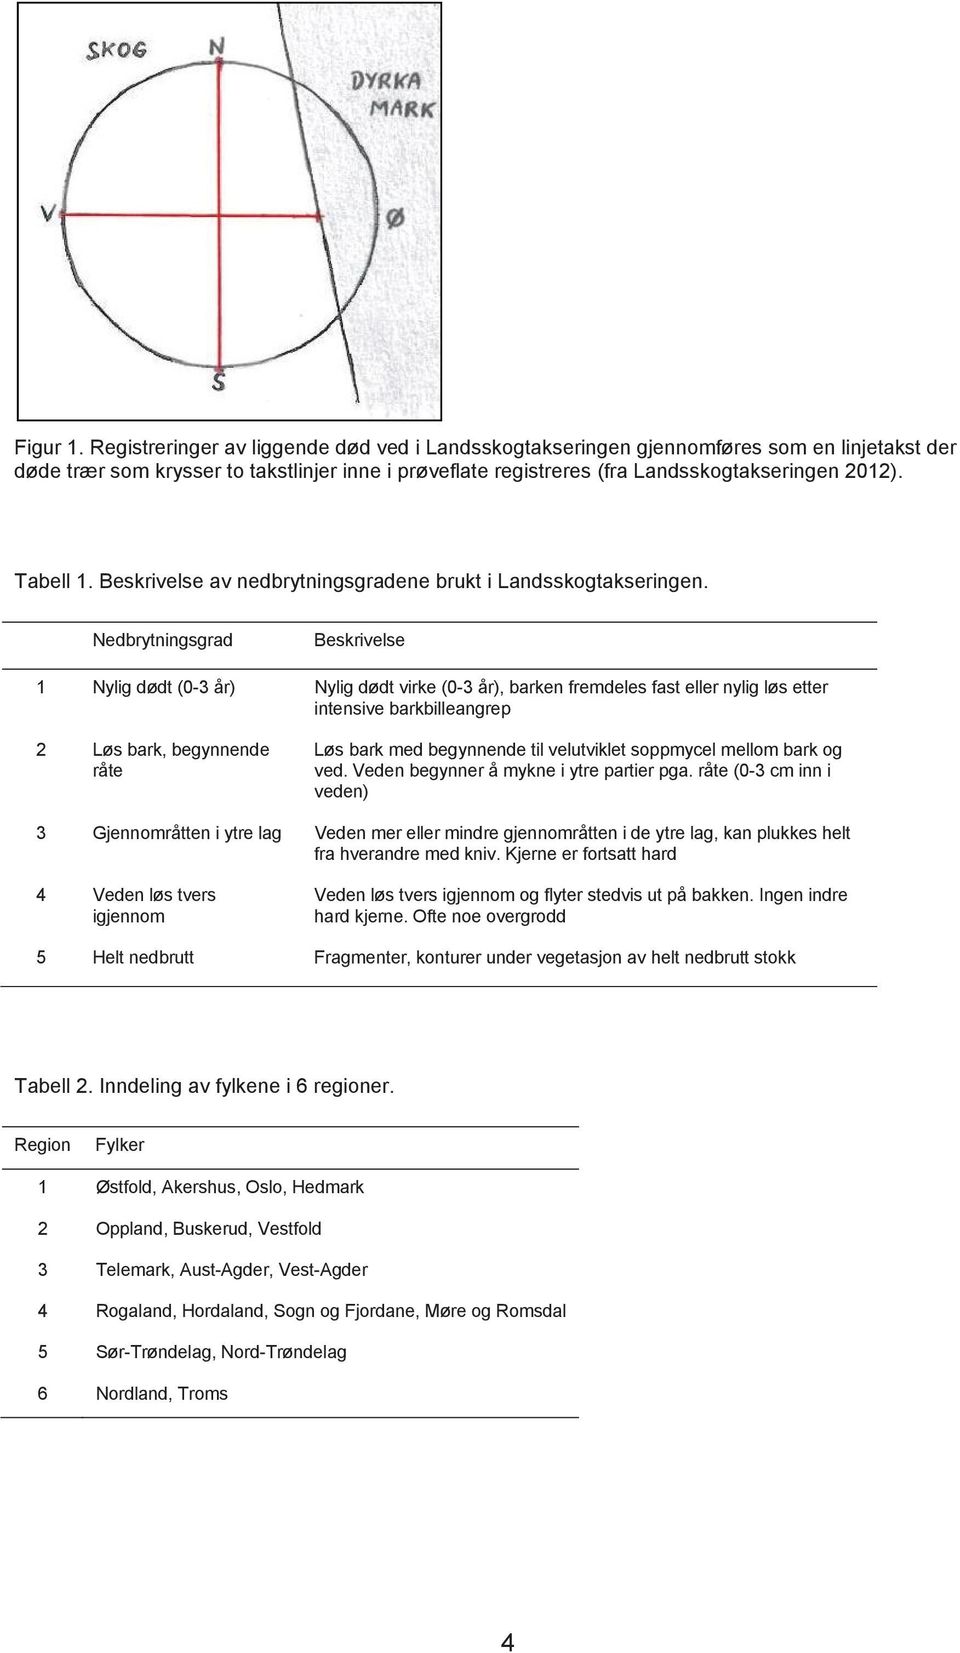 Tabell 1. Beskrivelse av nedbrytningsgradene brukt i Landsskogtakseringen.